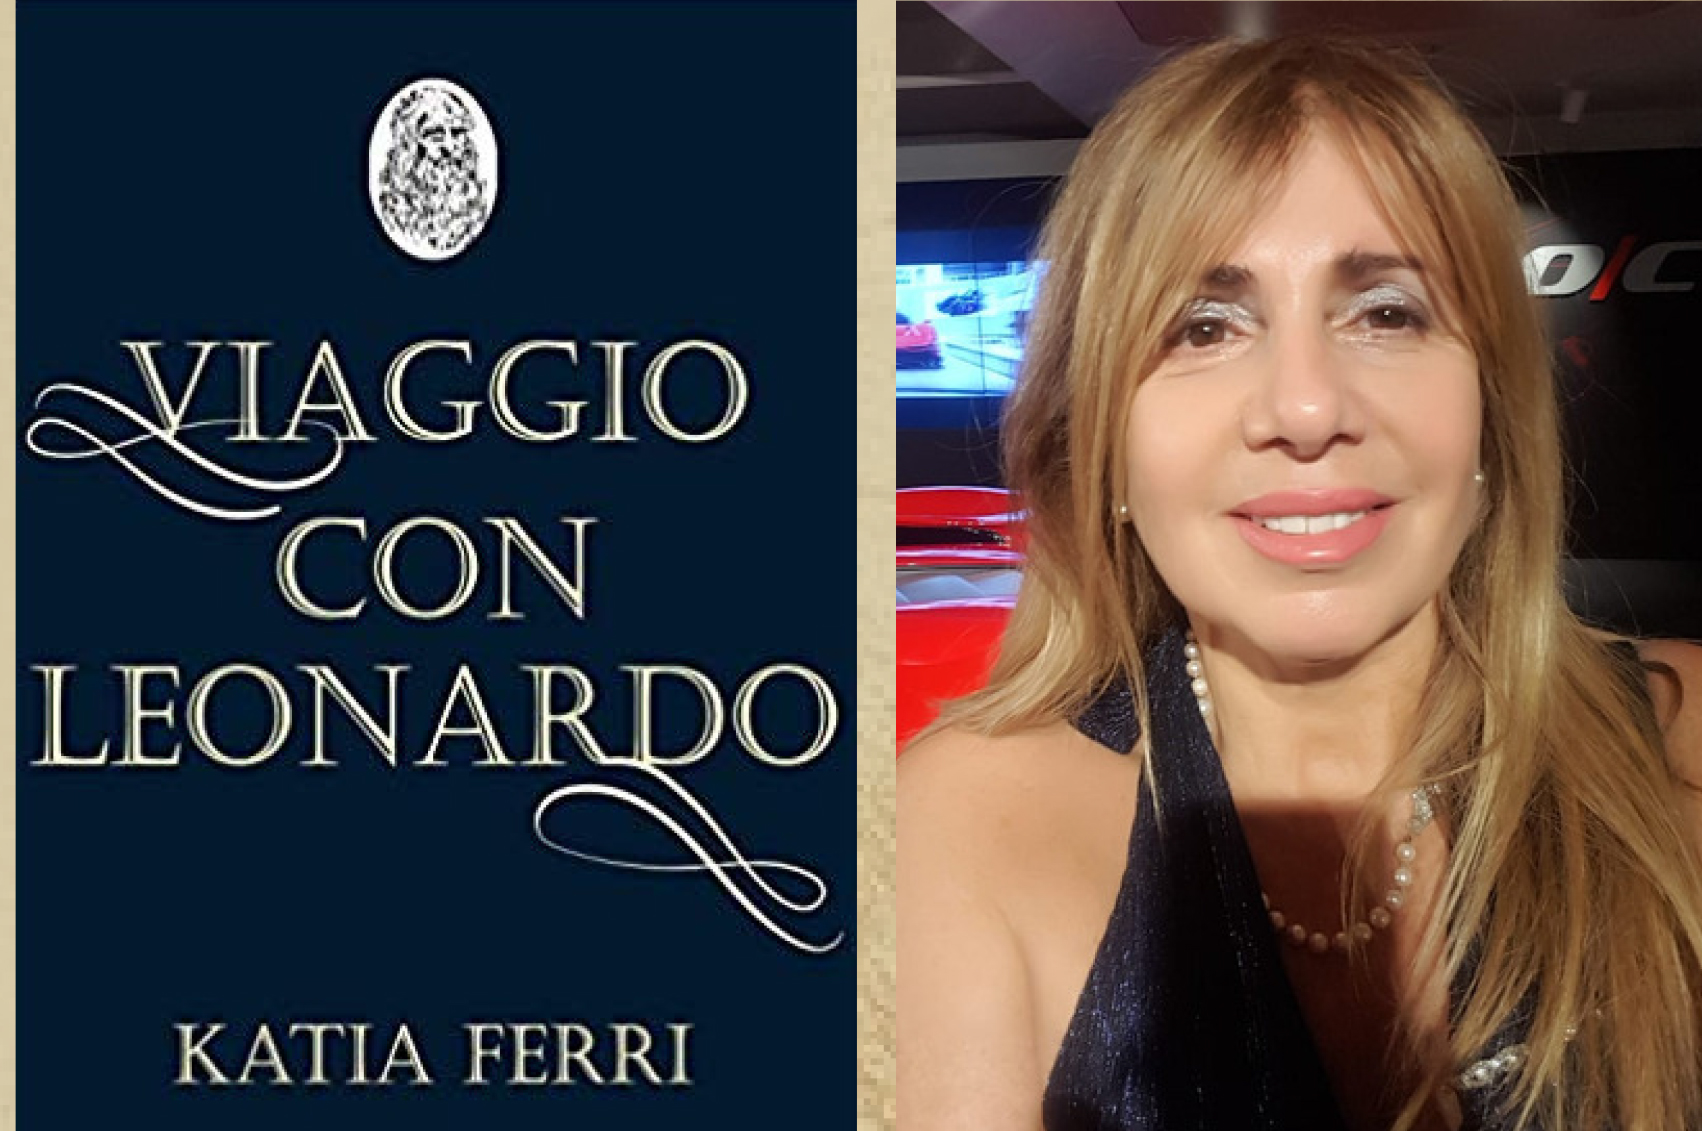 Viaggio con Leonardo, copertina libro e autrice Katia Ferri